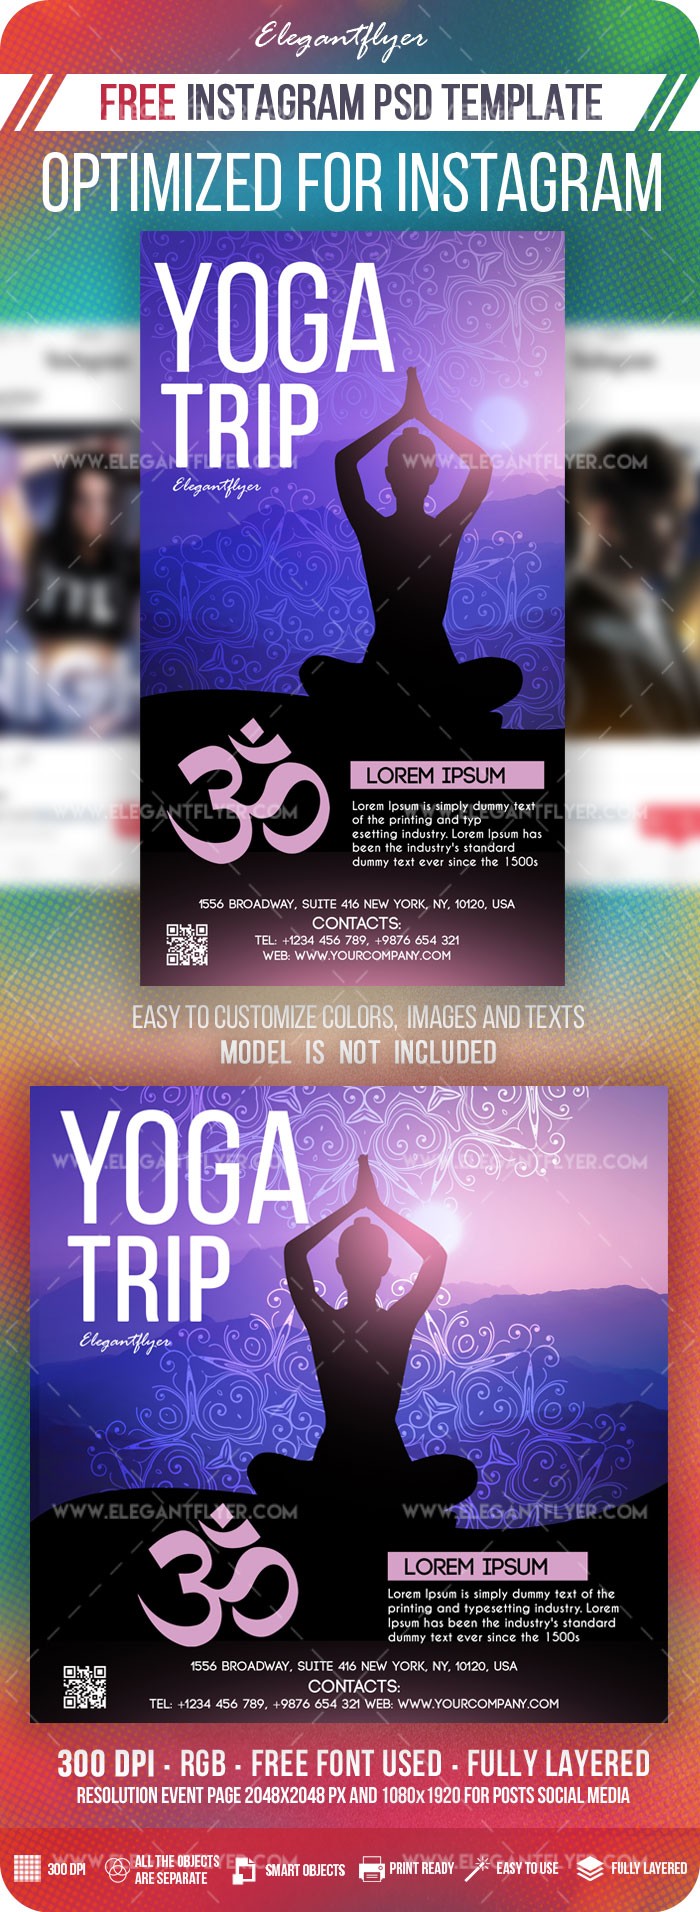 Yoga Reise Instagram by ElegantFlyer